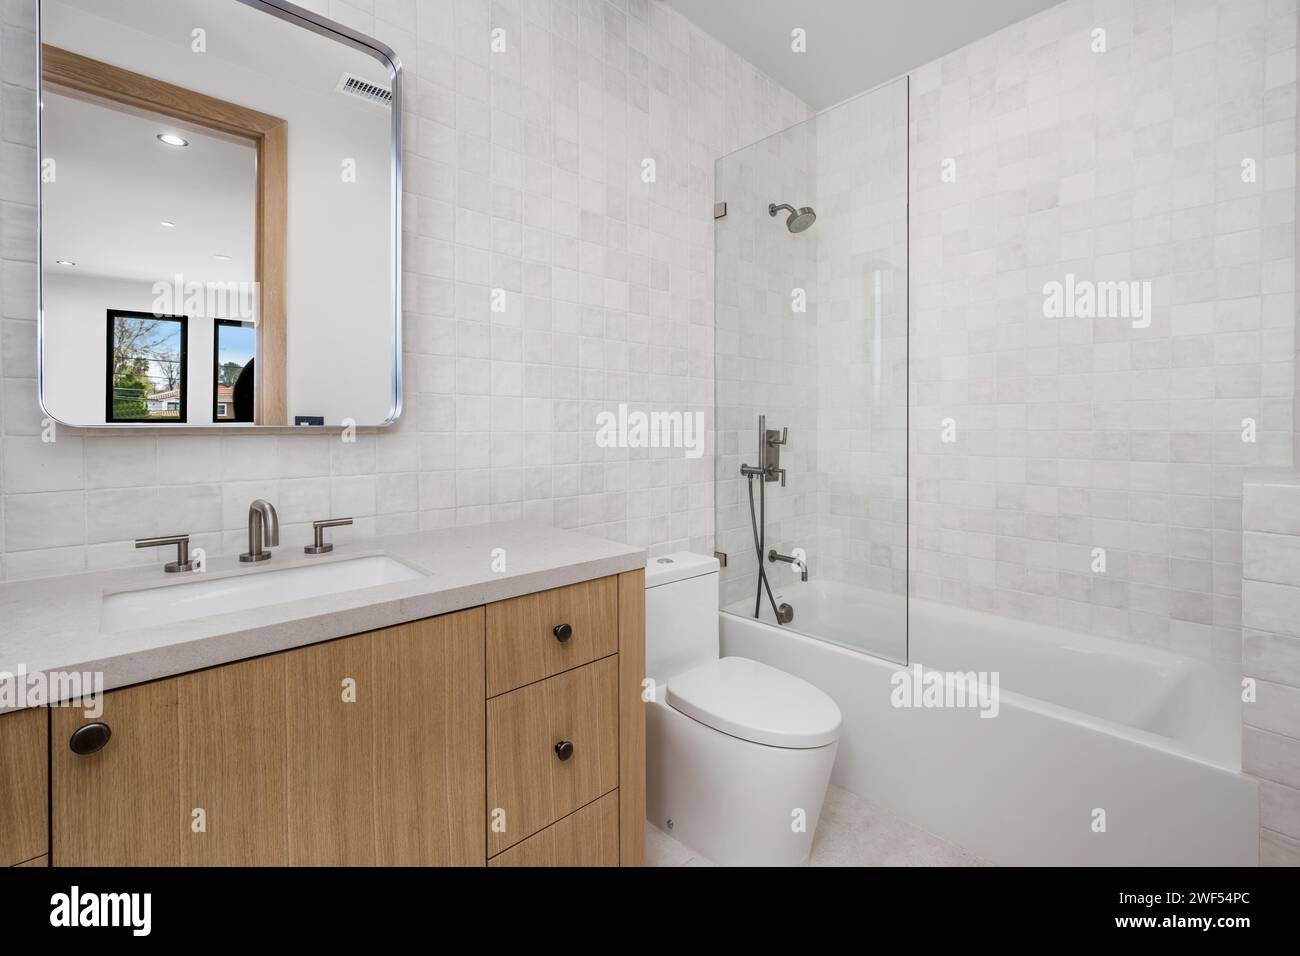 toilettes blanches et baignoire dans une salle de bains avec fenêtre Banque D'Images